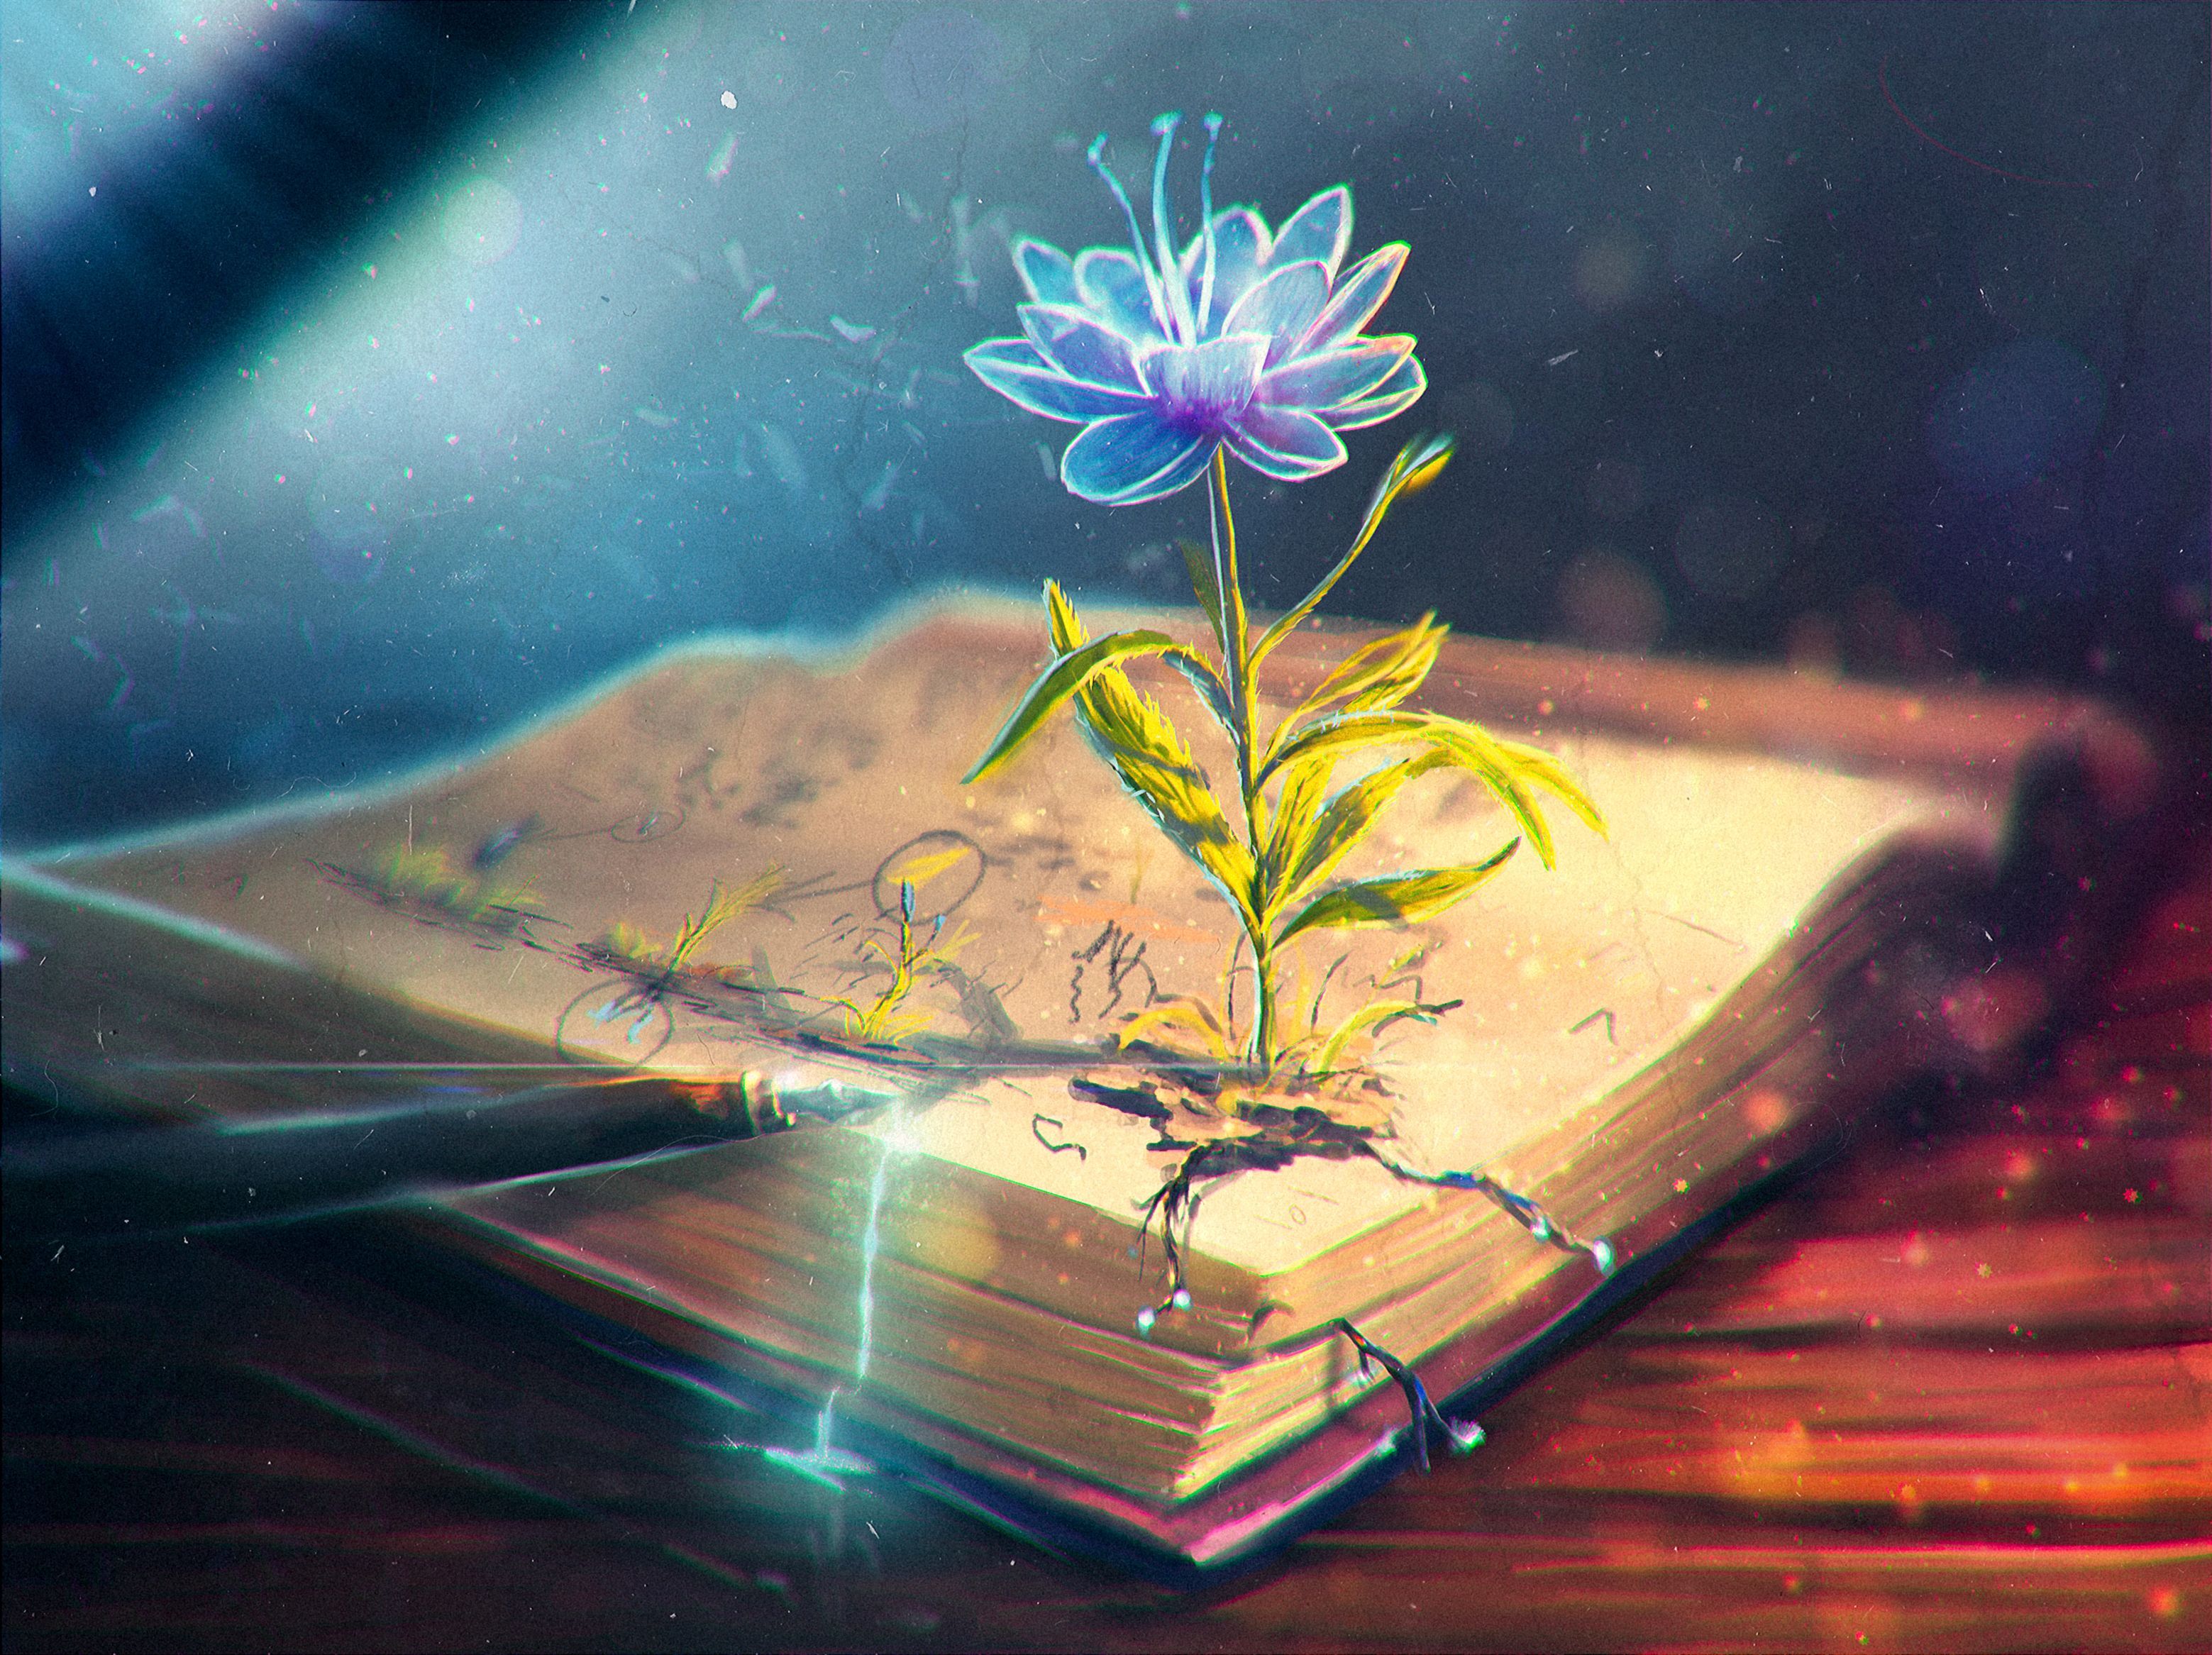 magic flower in blooming at old book digital art wallpaper